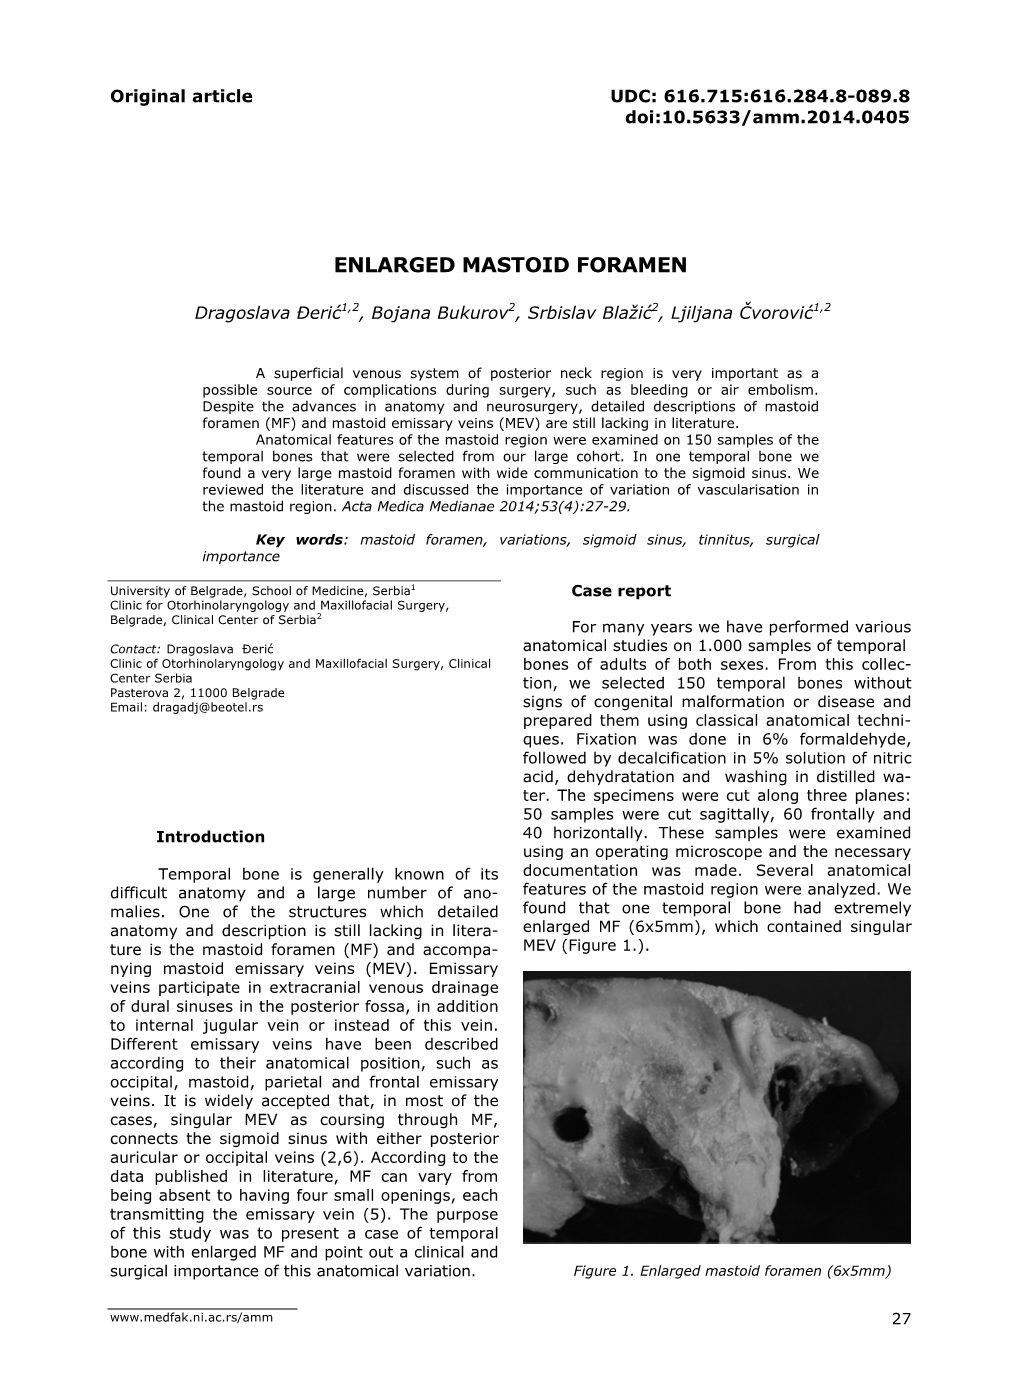 Enlarged Mastoid Foramen